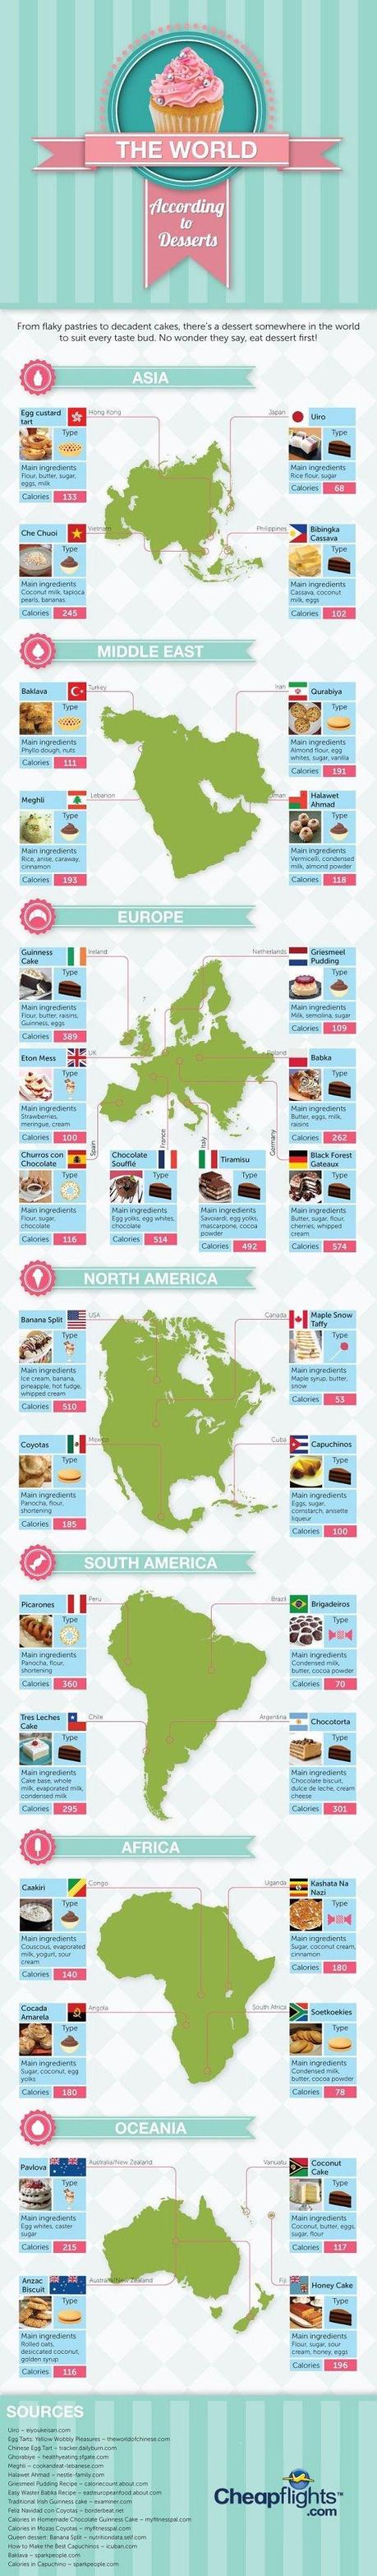 32 ricette di dessert da tutto il mondo in un'infografica.